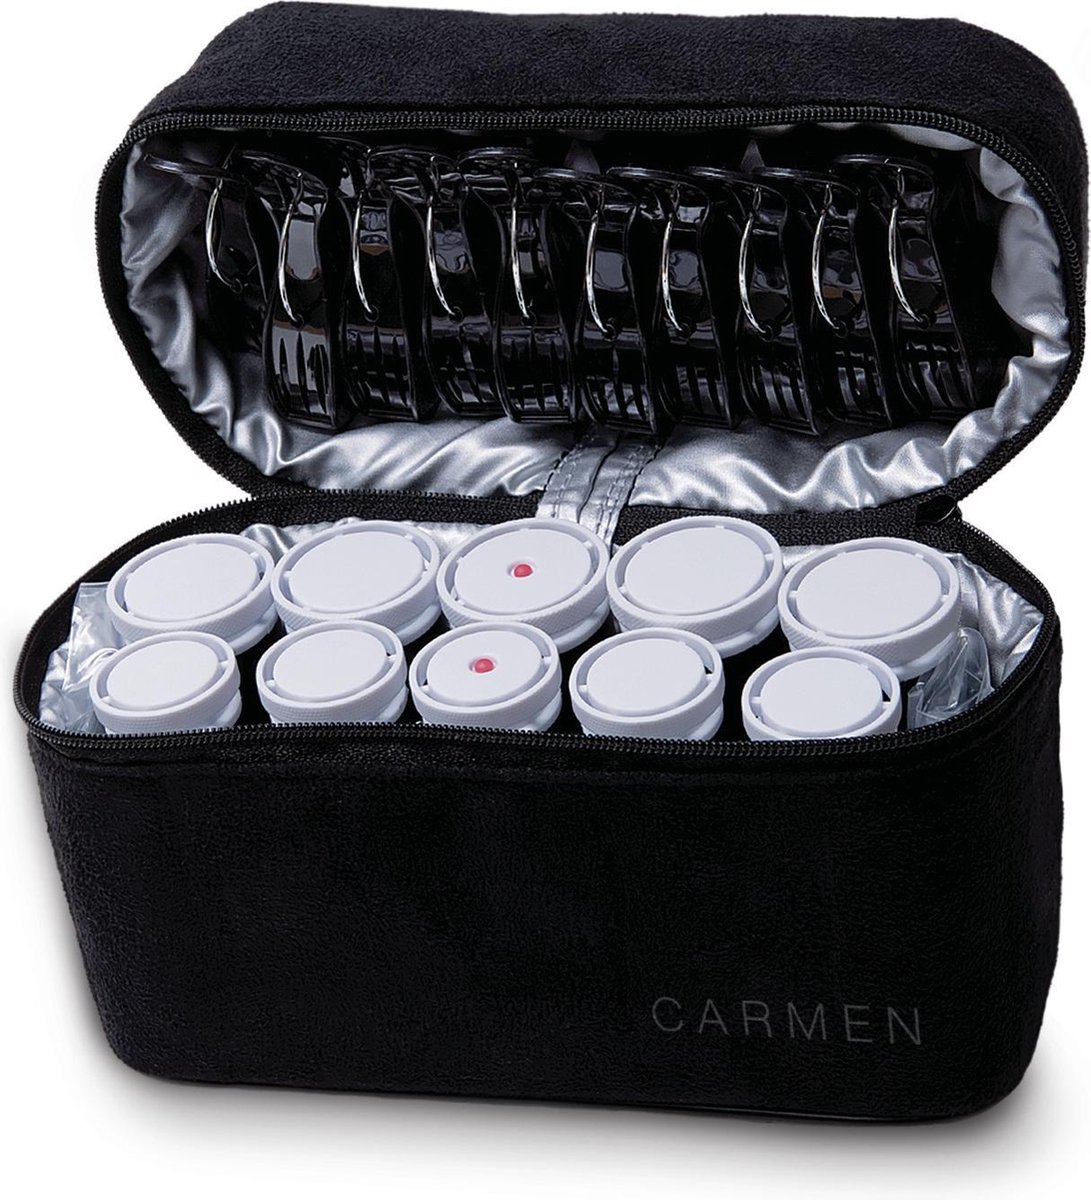 Kind Ontleden gemeenschap Carmen C2010 - Reis krulset - 10 rollers - Inclusief reisetui - Dual  Voltage | bol.com